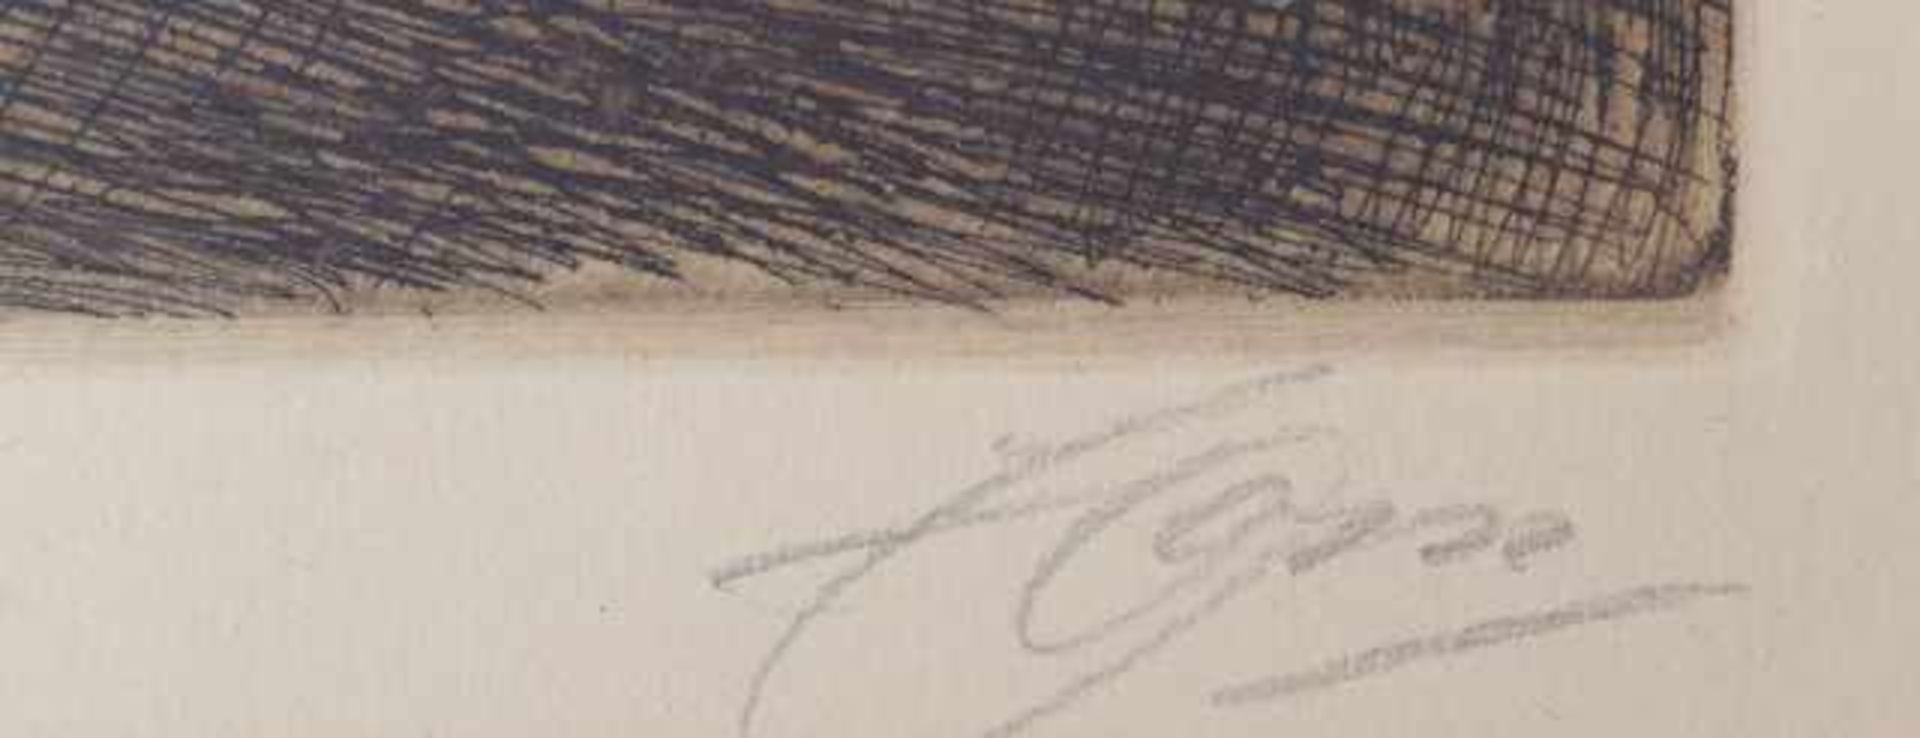 Anders Leonard Zorn (*1860 in Yvraden (Schweden),  1920 in Mora (Schweden)): "The Bed-Stool - Image 2 of 2